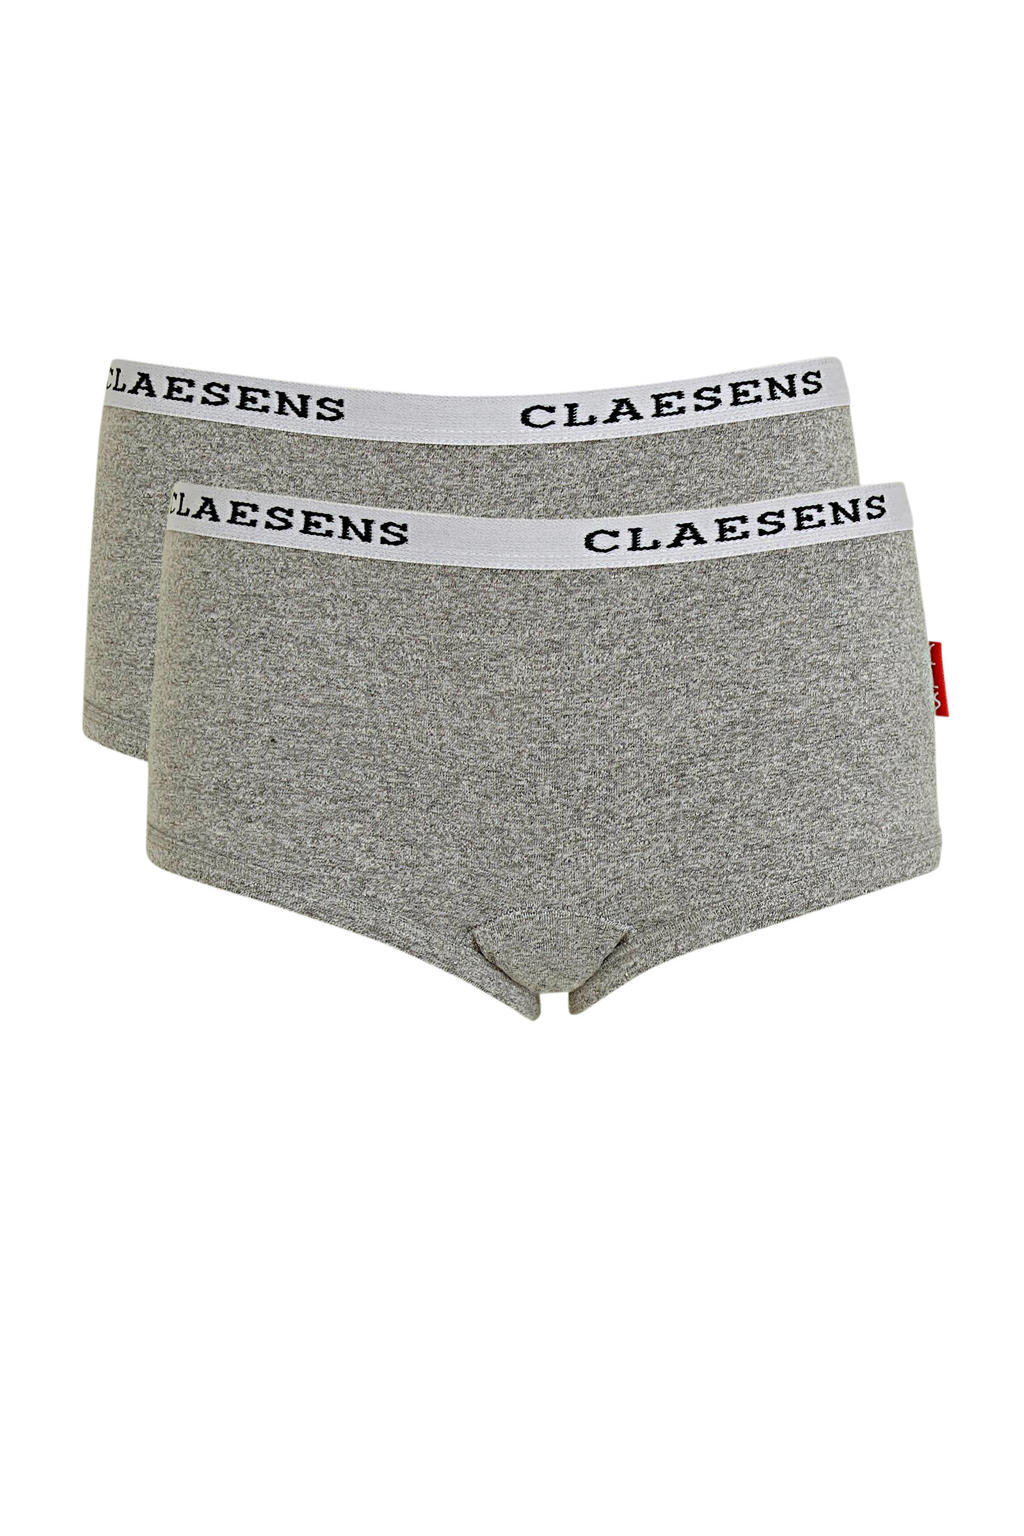 Claesen's hipster - set van 2 grijs/wit